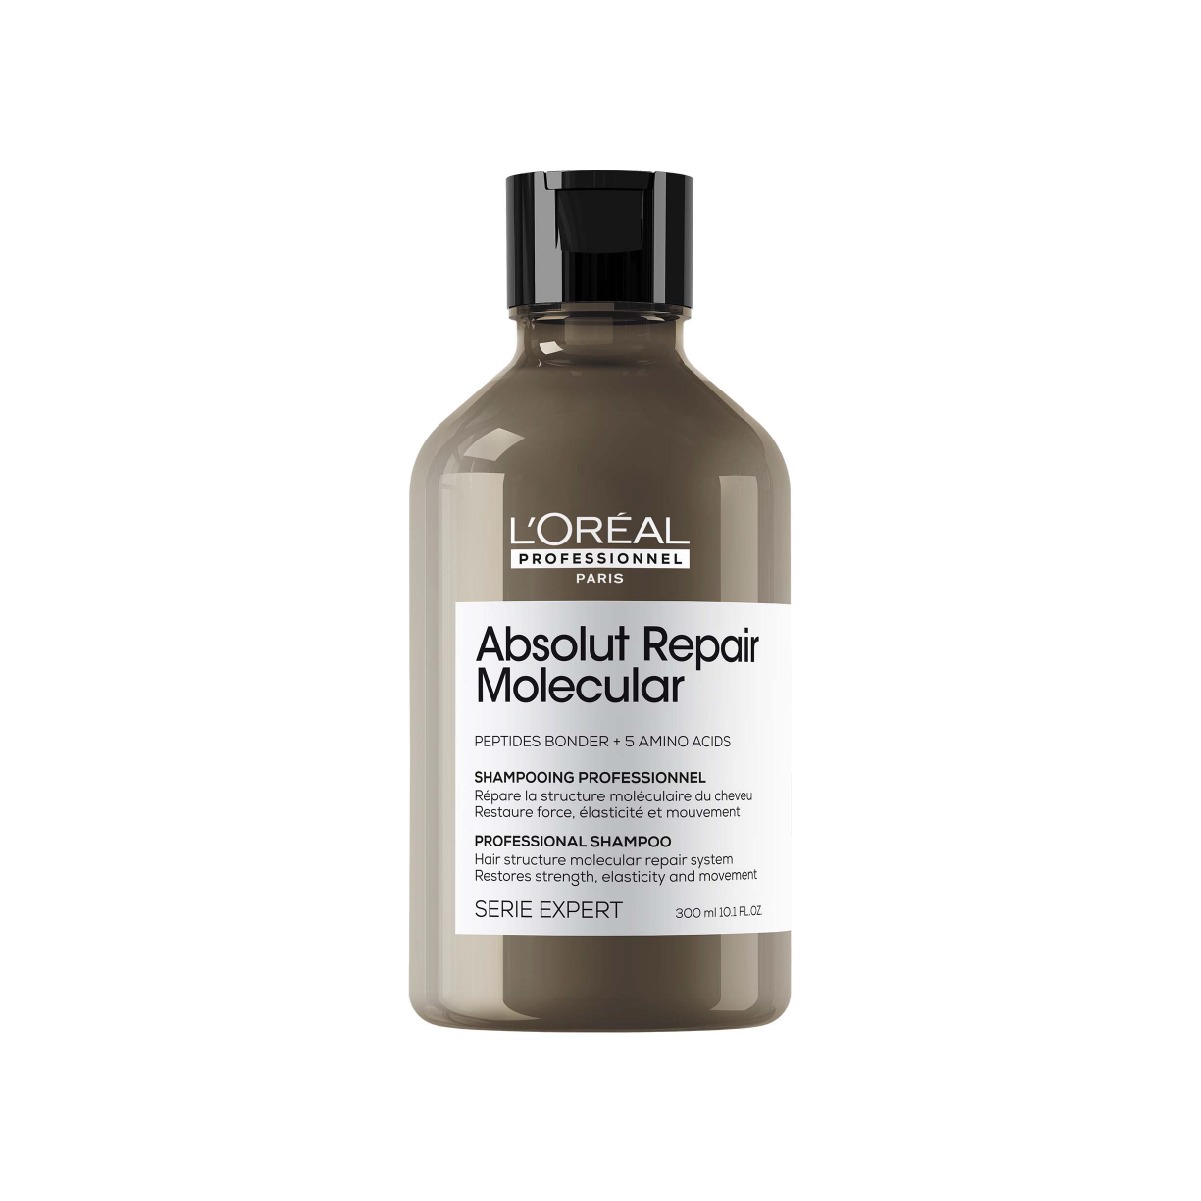 L’Oréal Absolut Repair Molecular Shampoo